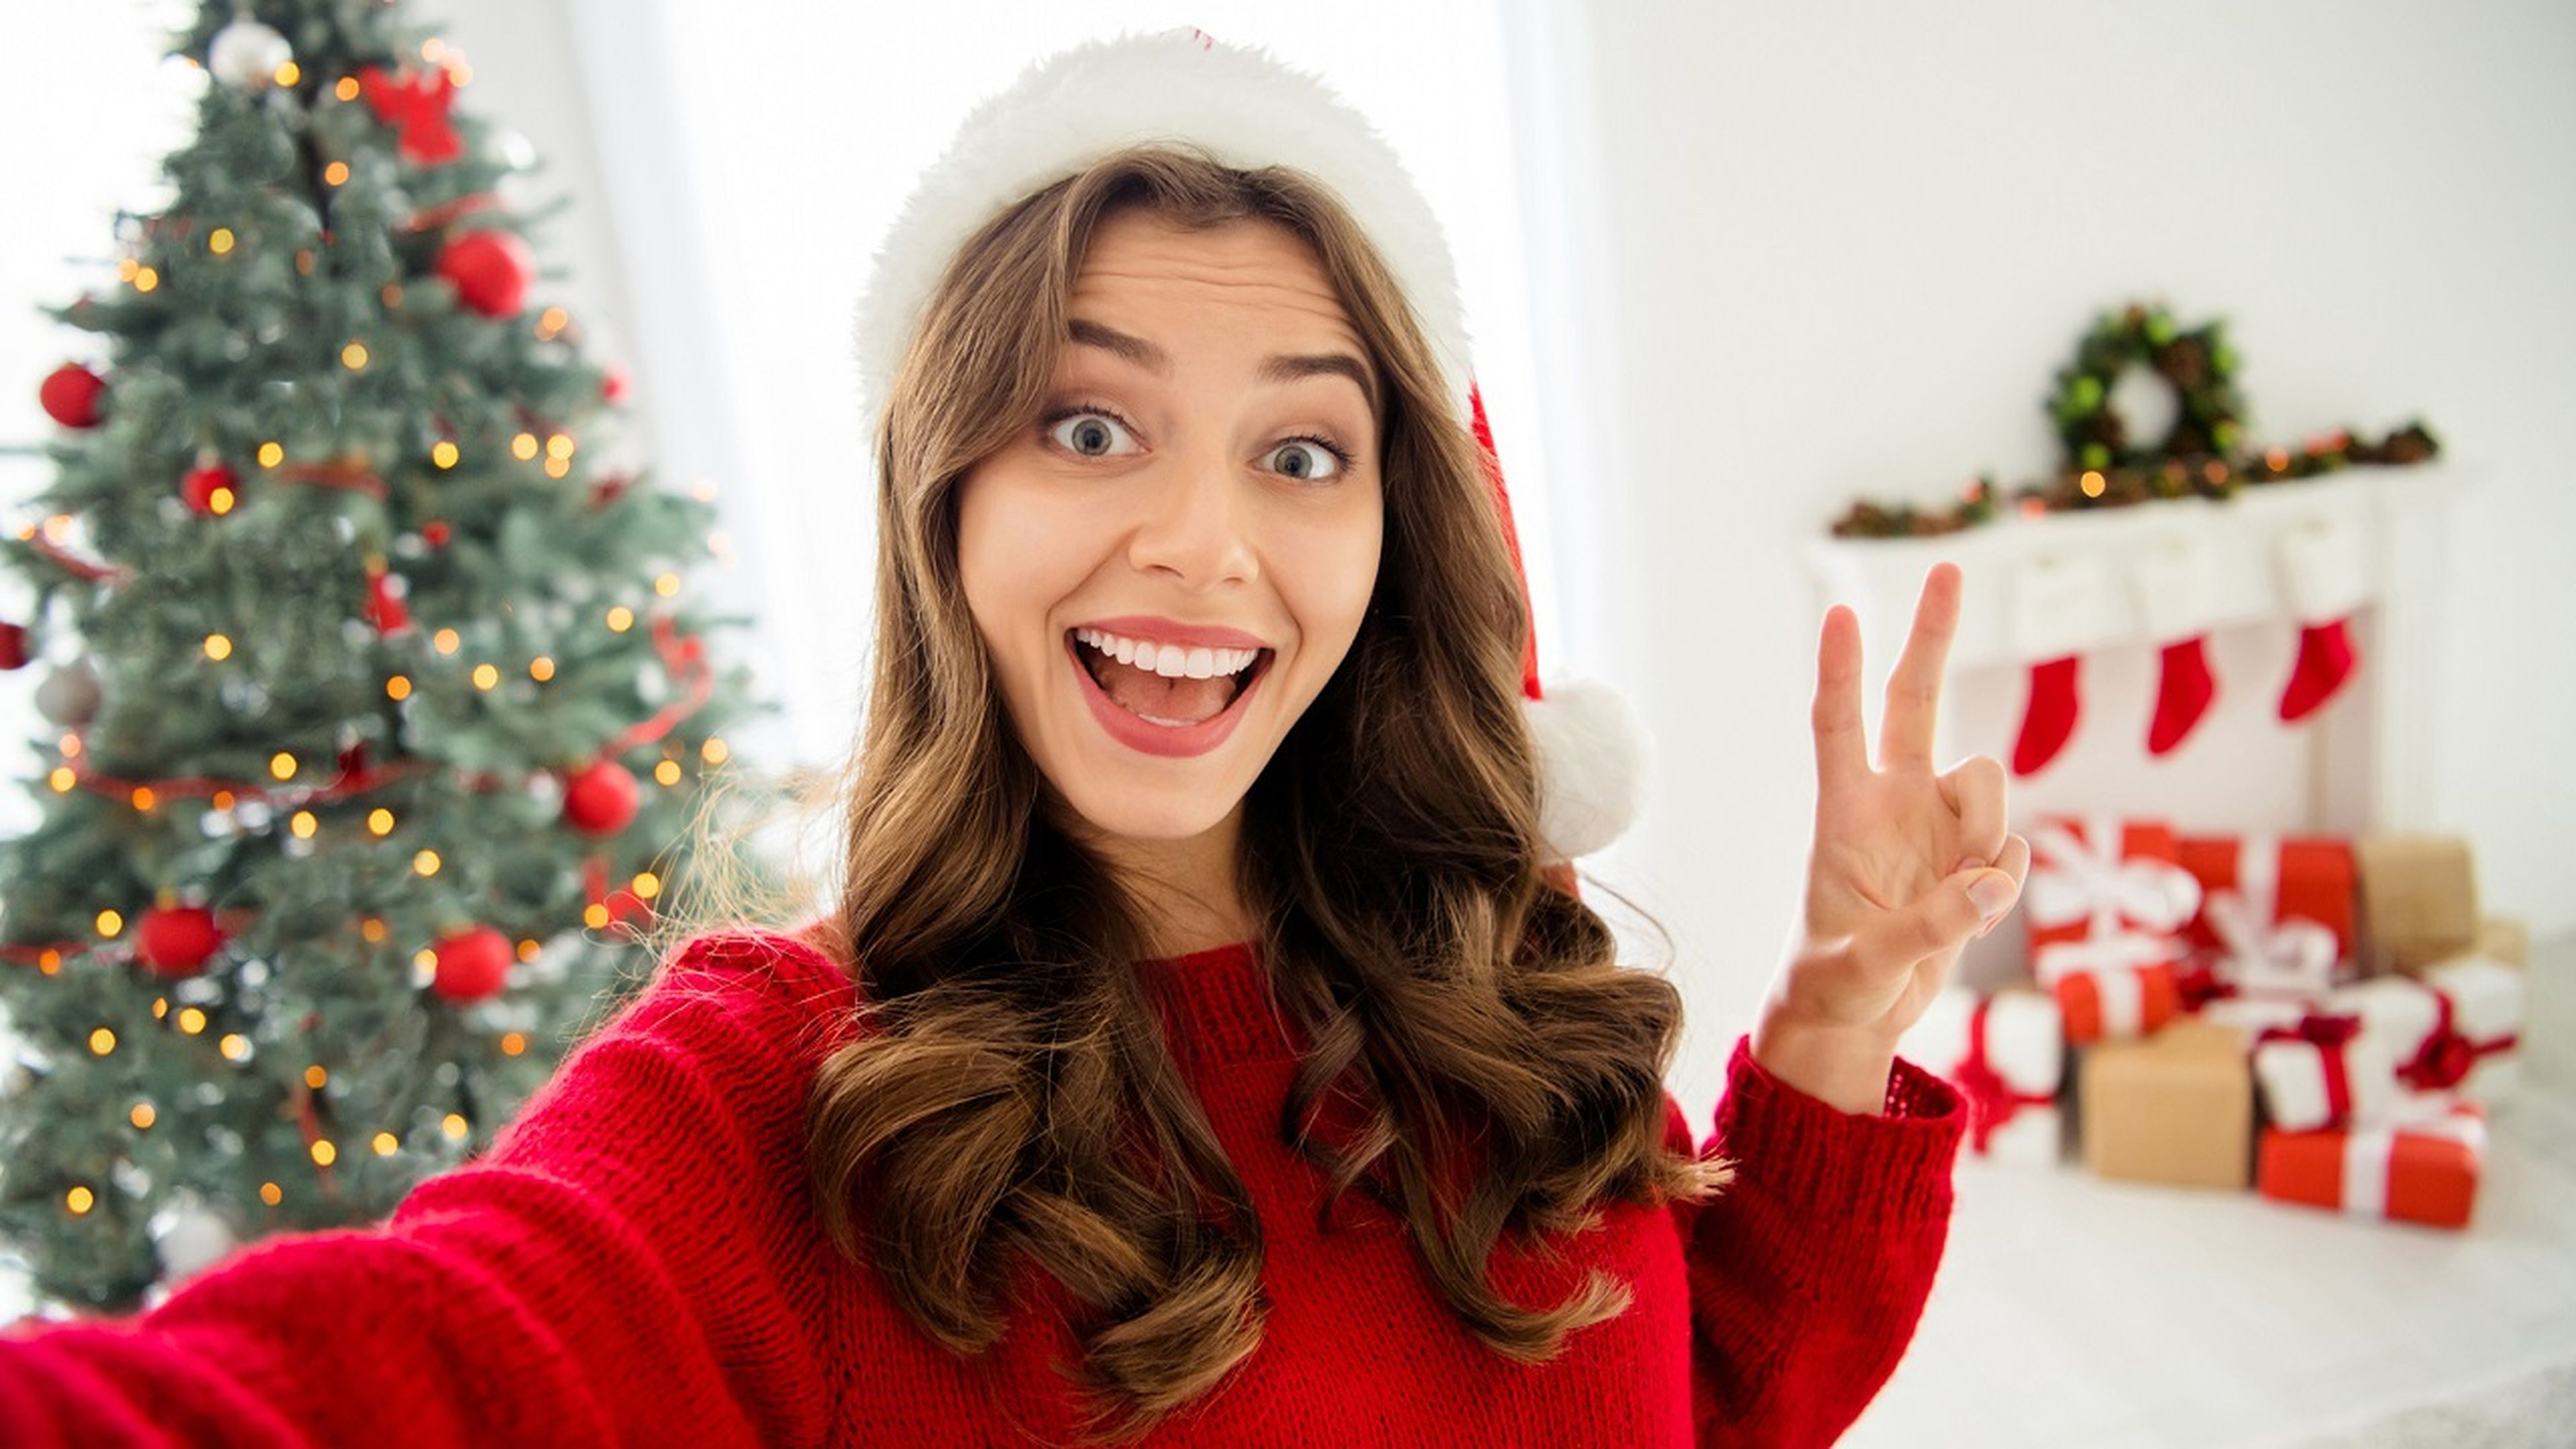 Estas son las 5 aplicaciones que mejorarán tus fotos esta Navidad